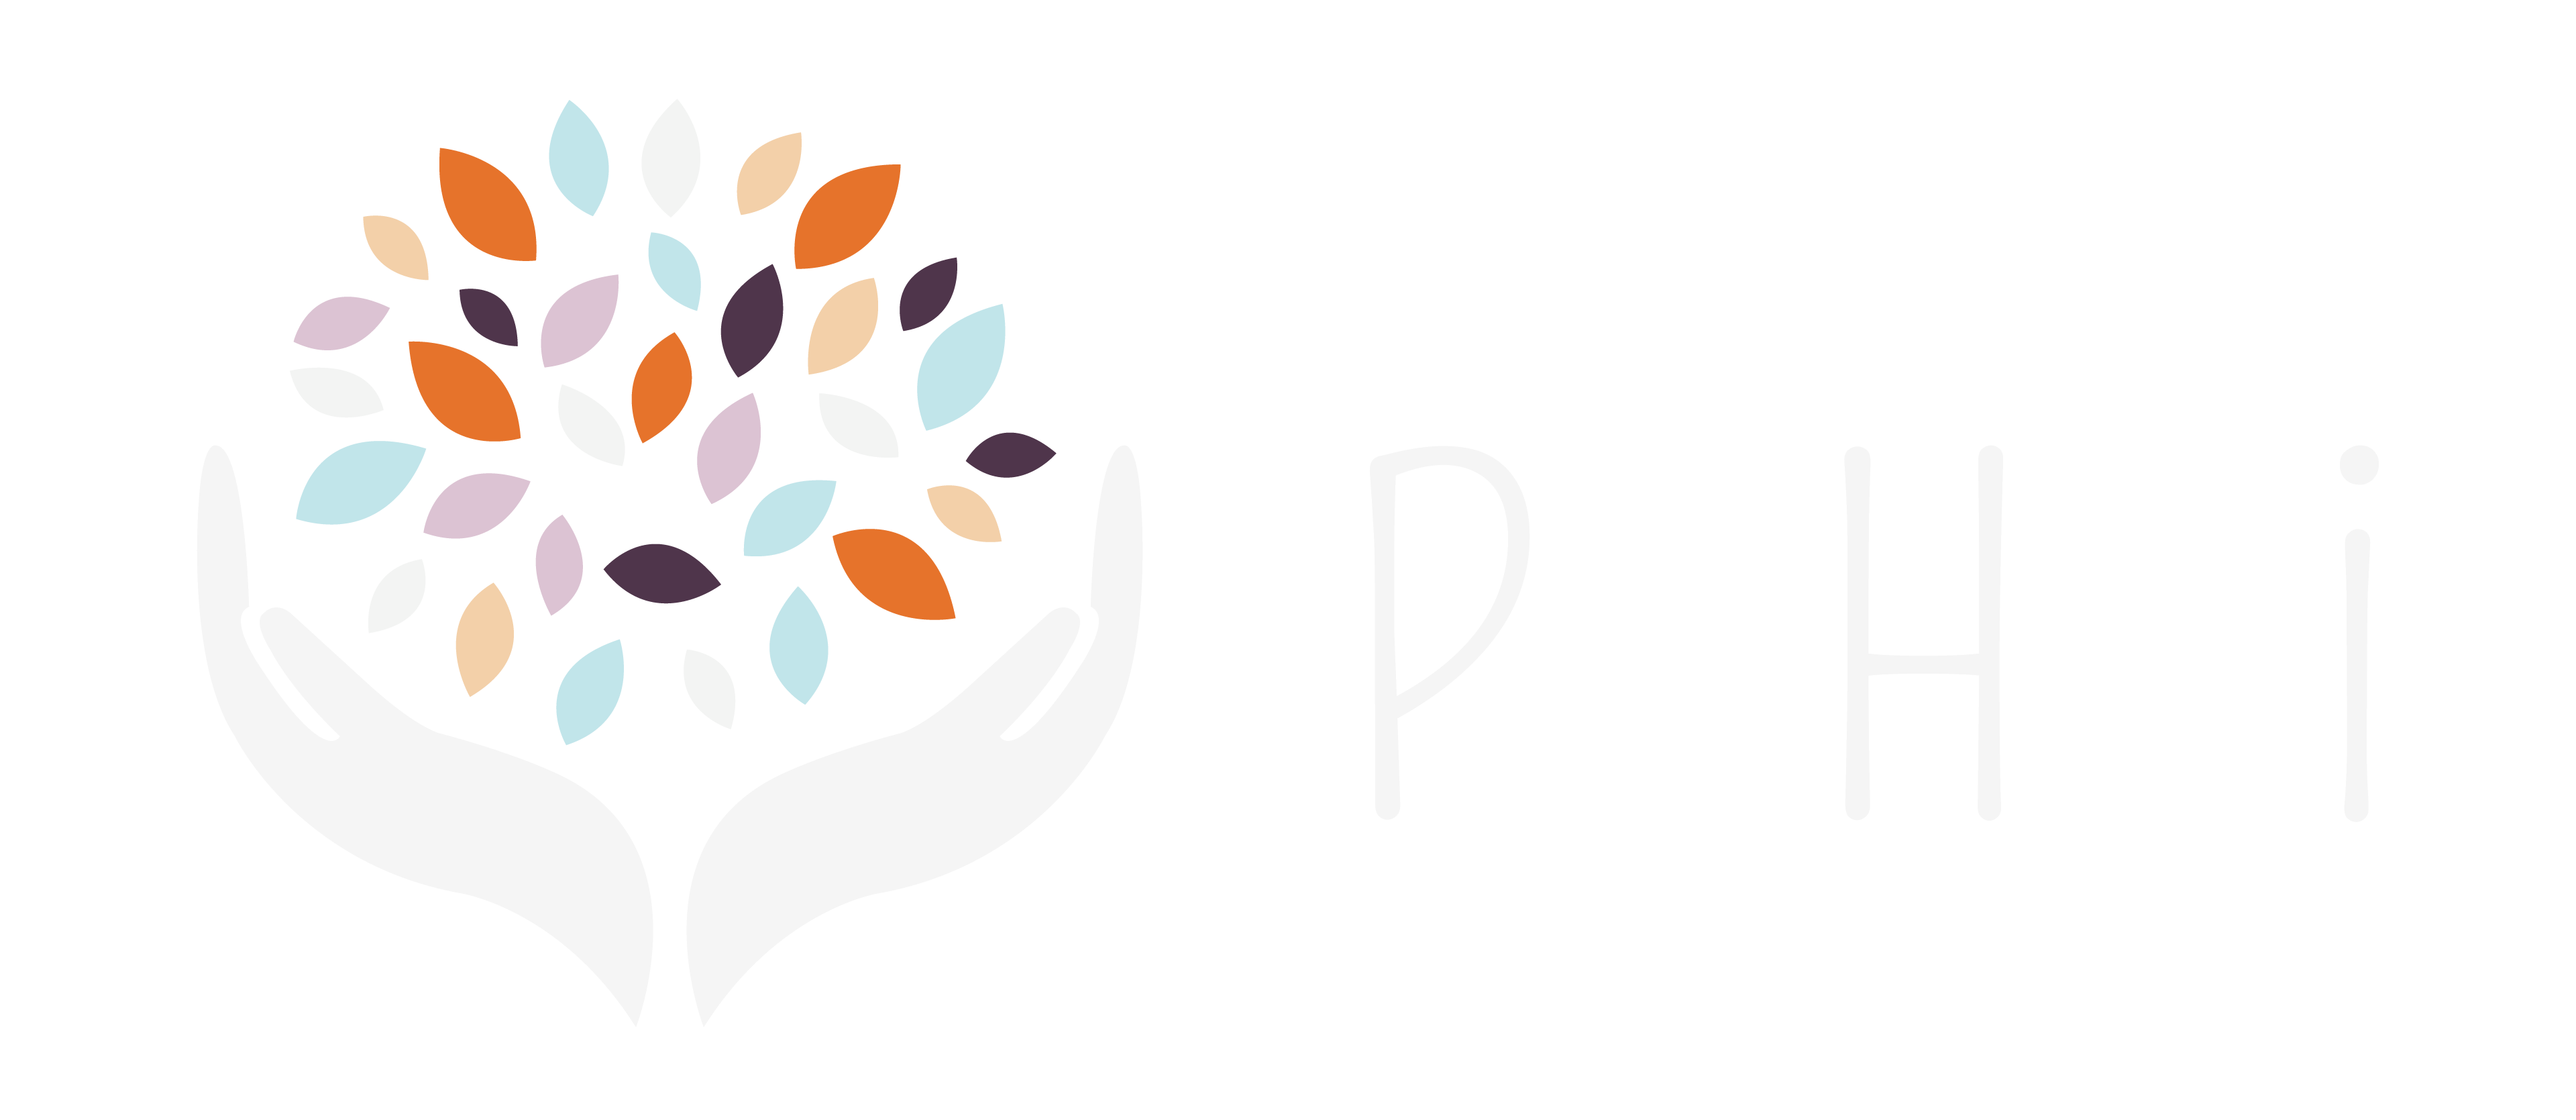 logo phi